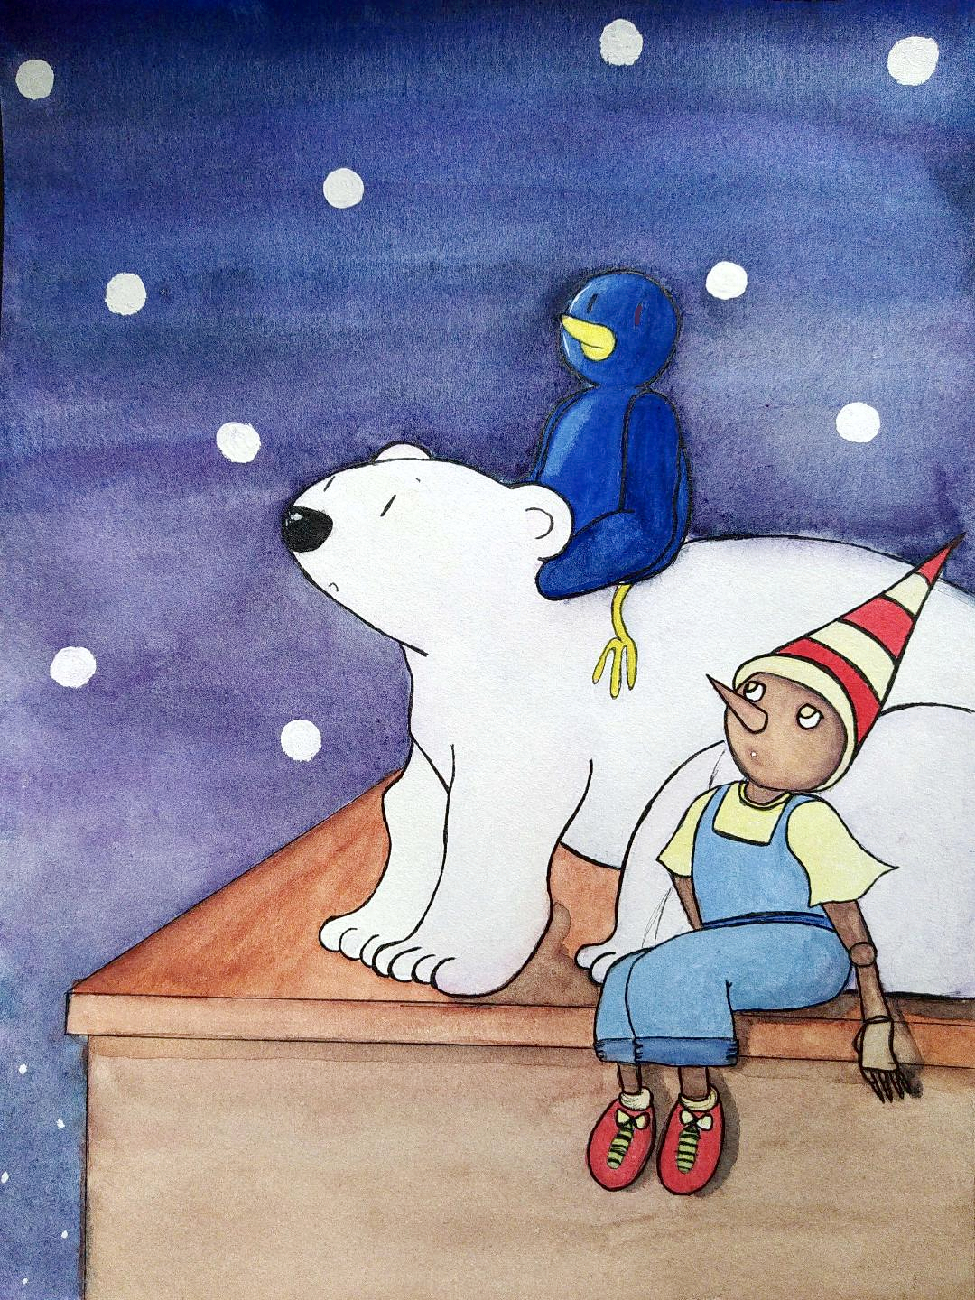 Illustration finale avec le pantin assis sur une plate-forme avec derrière l'ours blanc et le pingouin perché sur son dos